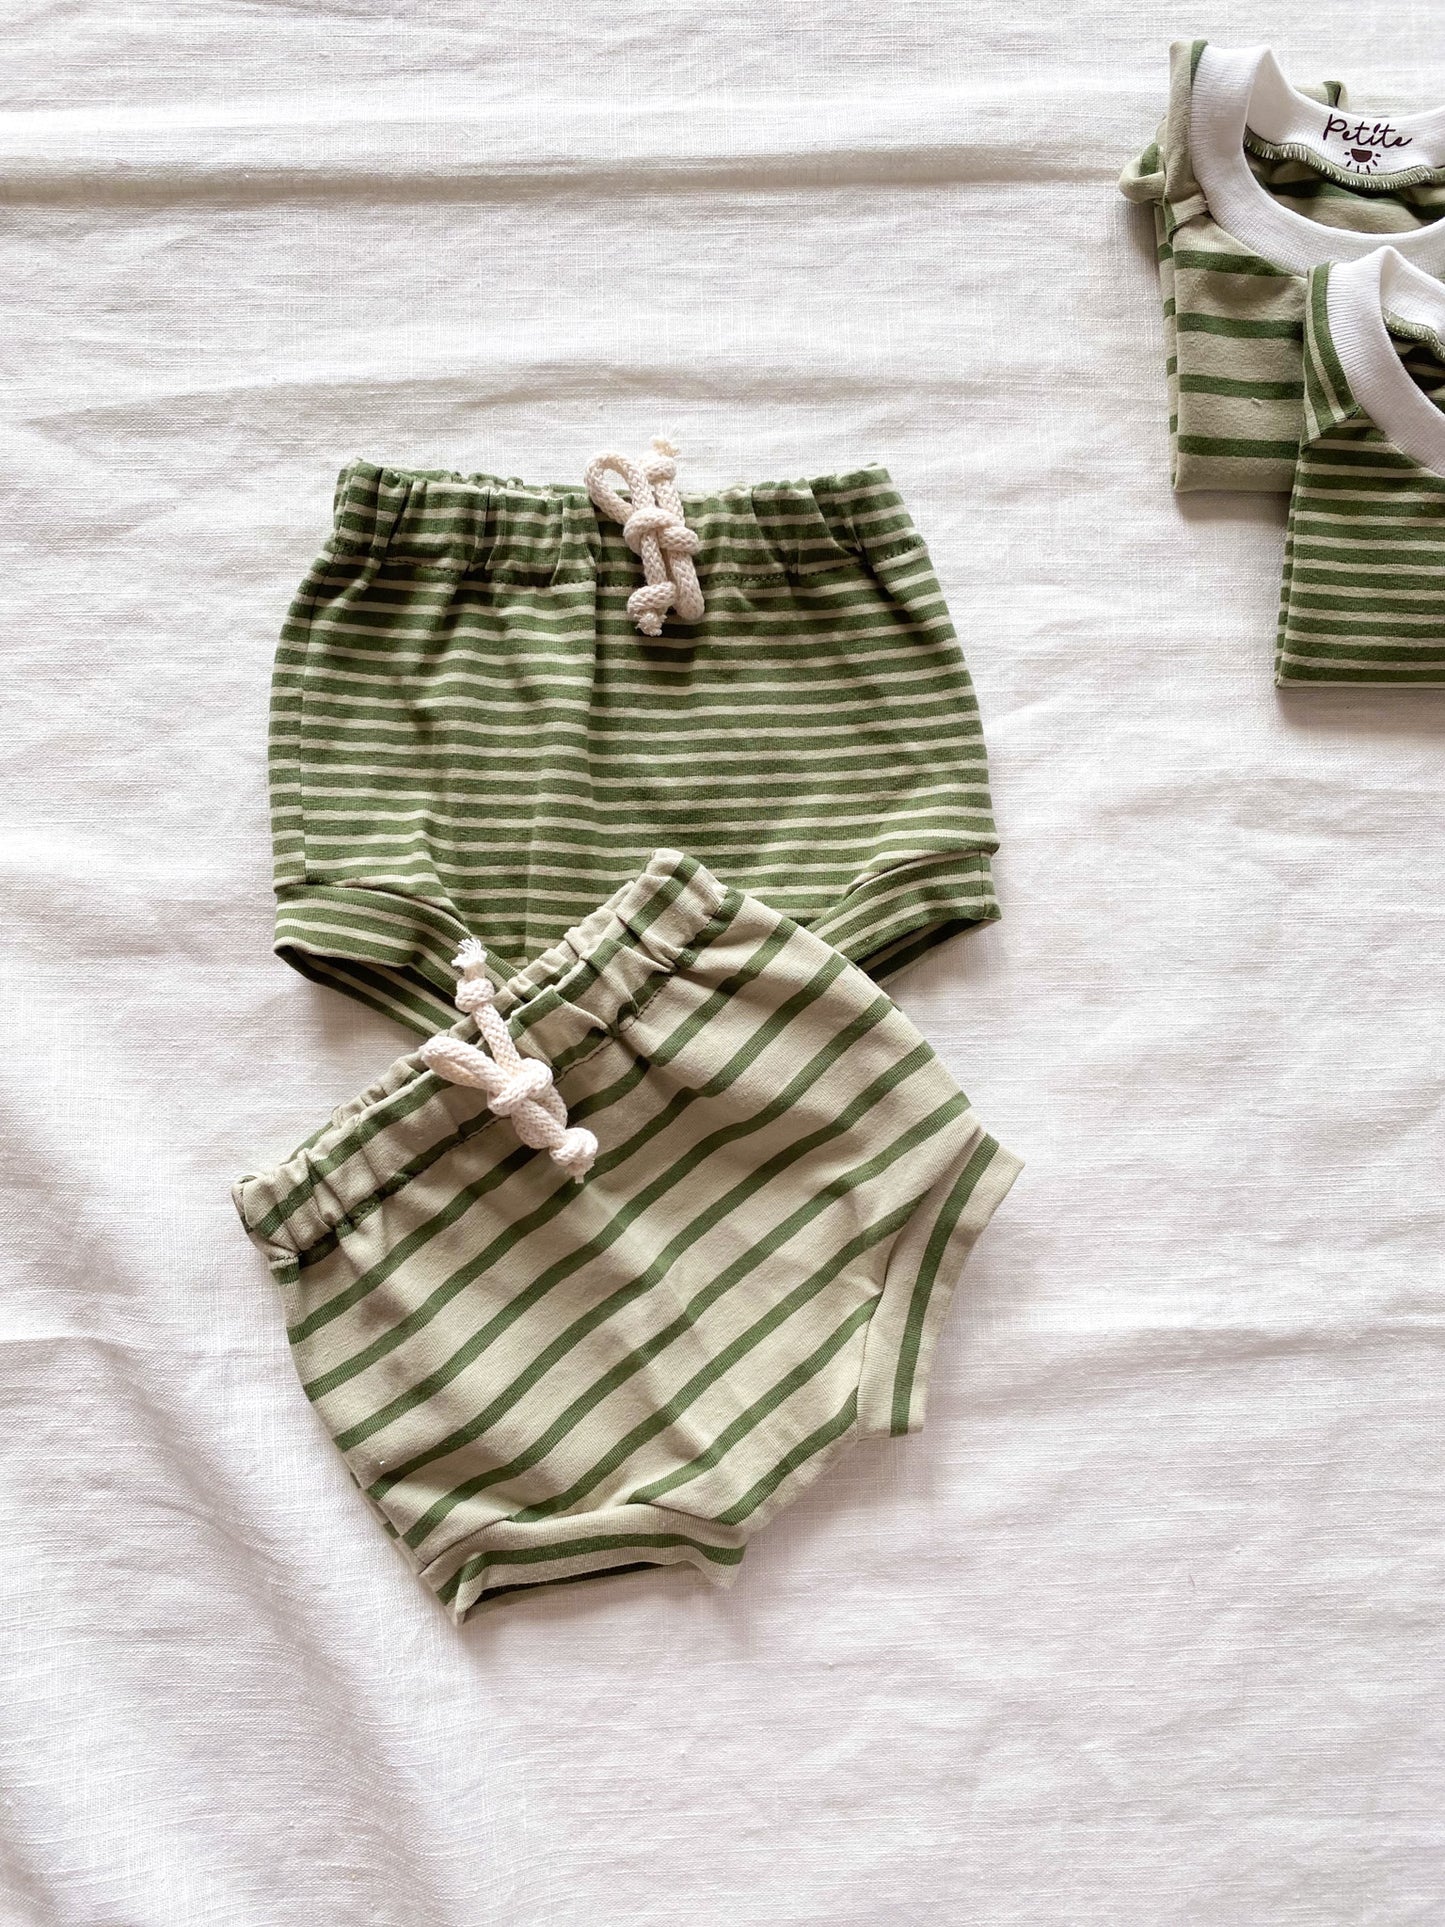 Baby boy shorts / olive stripes